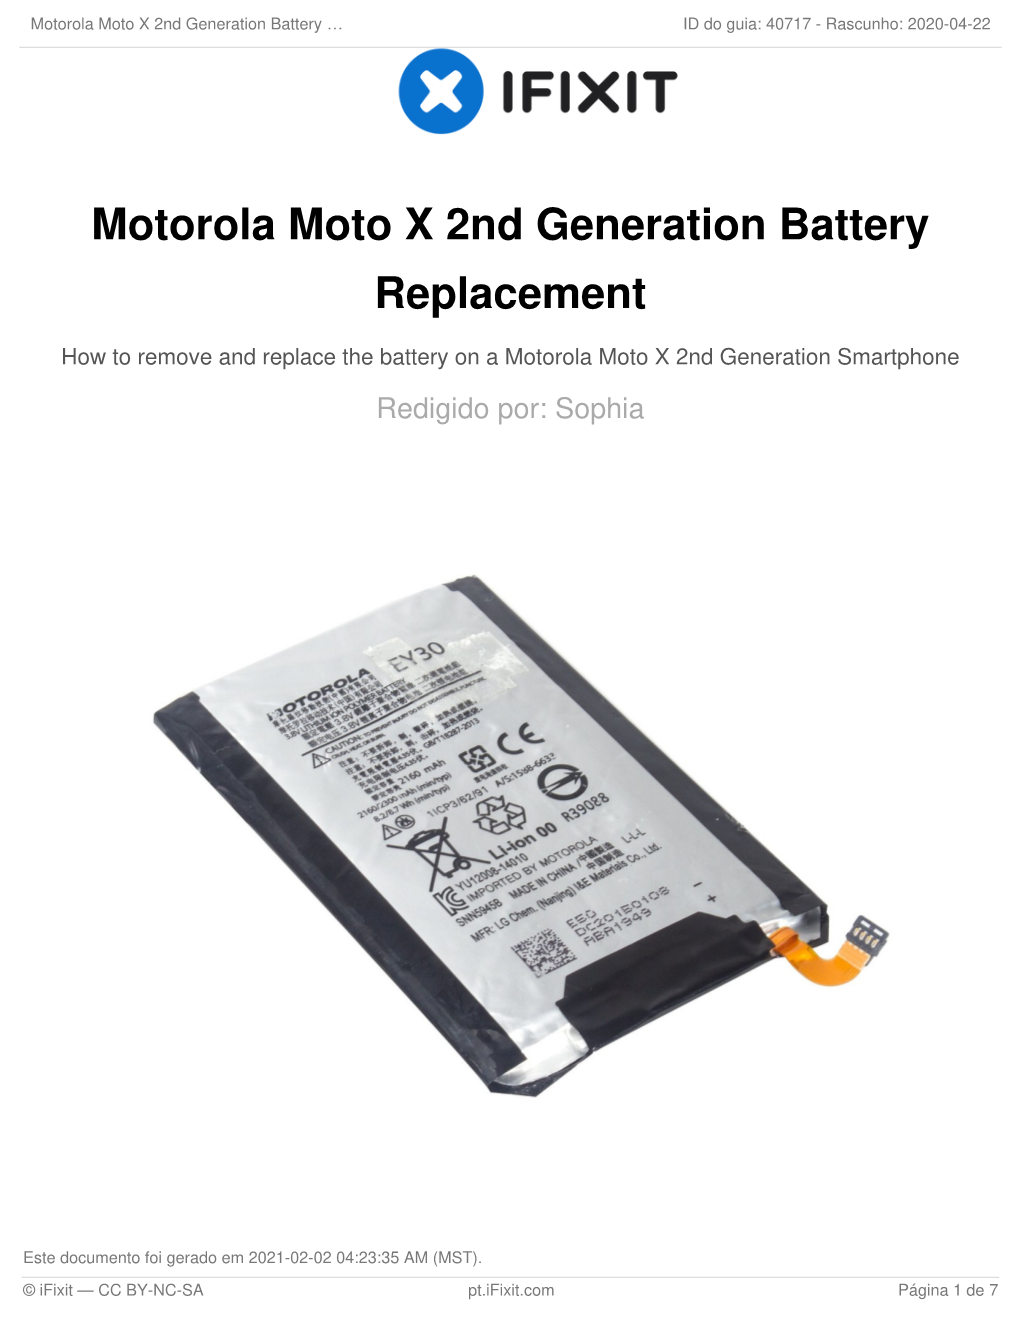 Motorola Moto X 2Nd Generation Battery Replacement